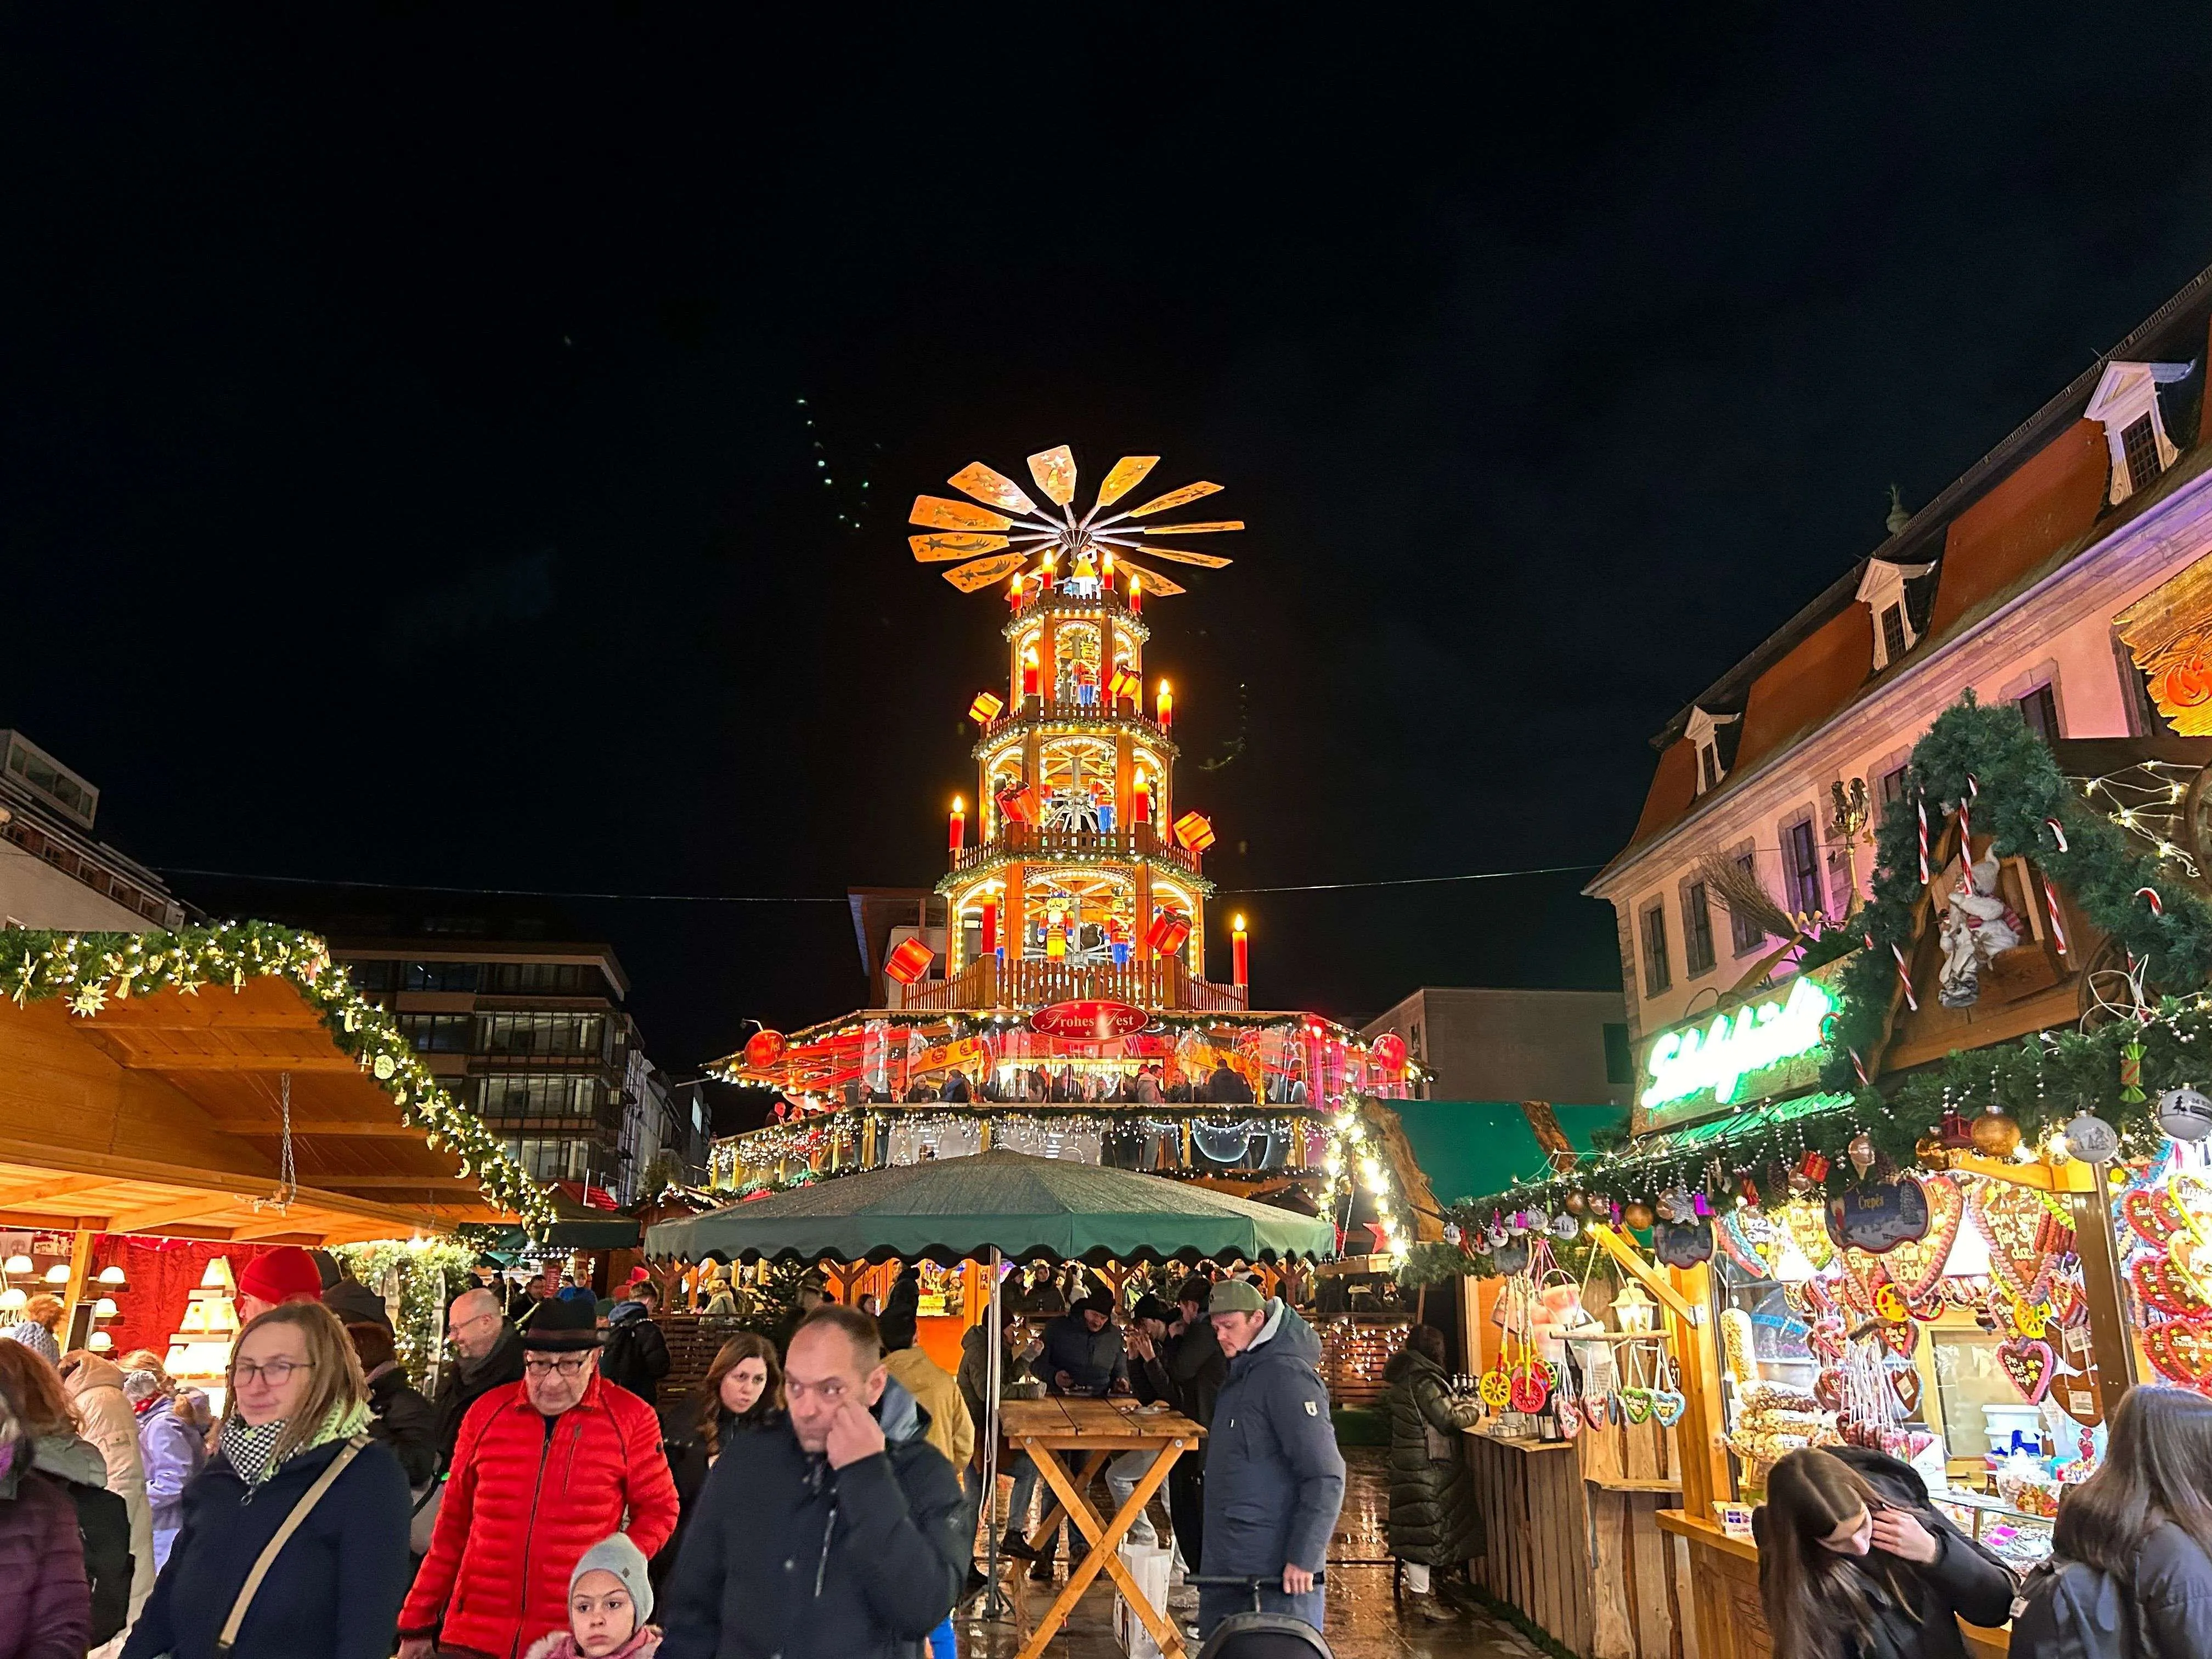 Fuldaer Innenstadt hell erleuchtet: Der Weihnachtsmarkt ist eröffnet